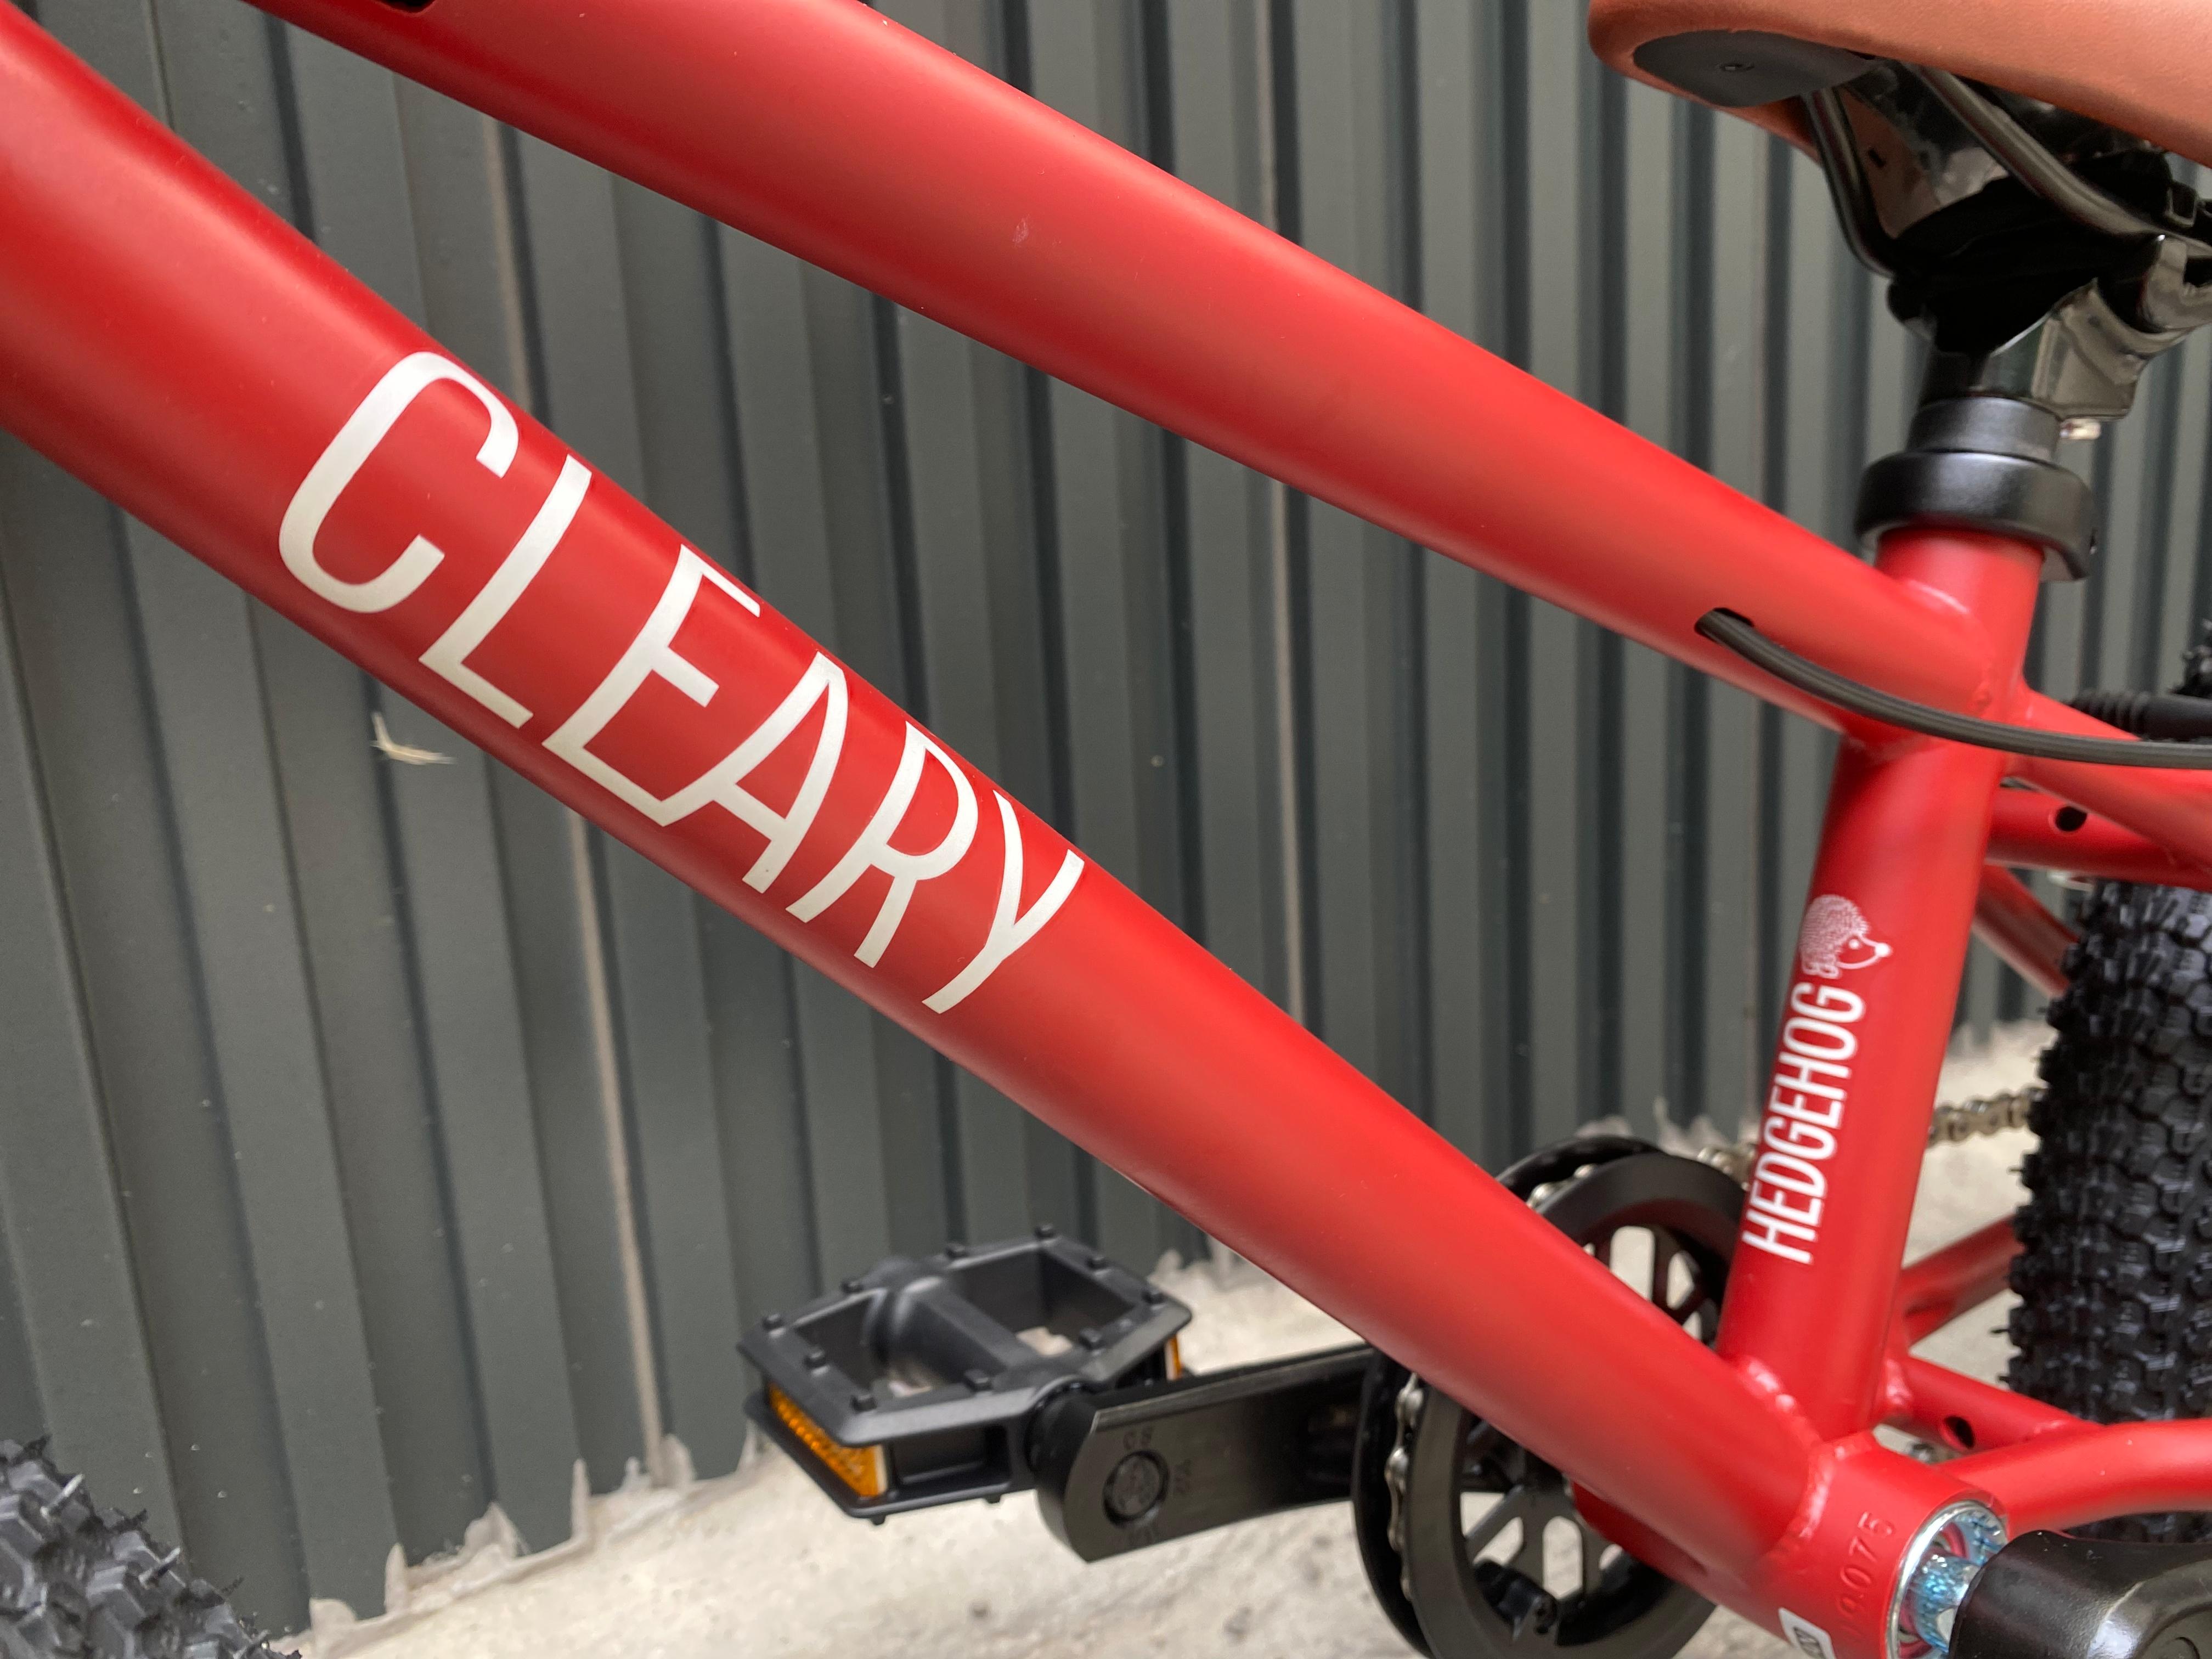 Cleary 16吋單車紅色 城市車 登山車 越野車 腳踏車